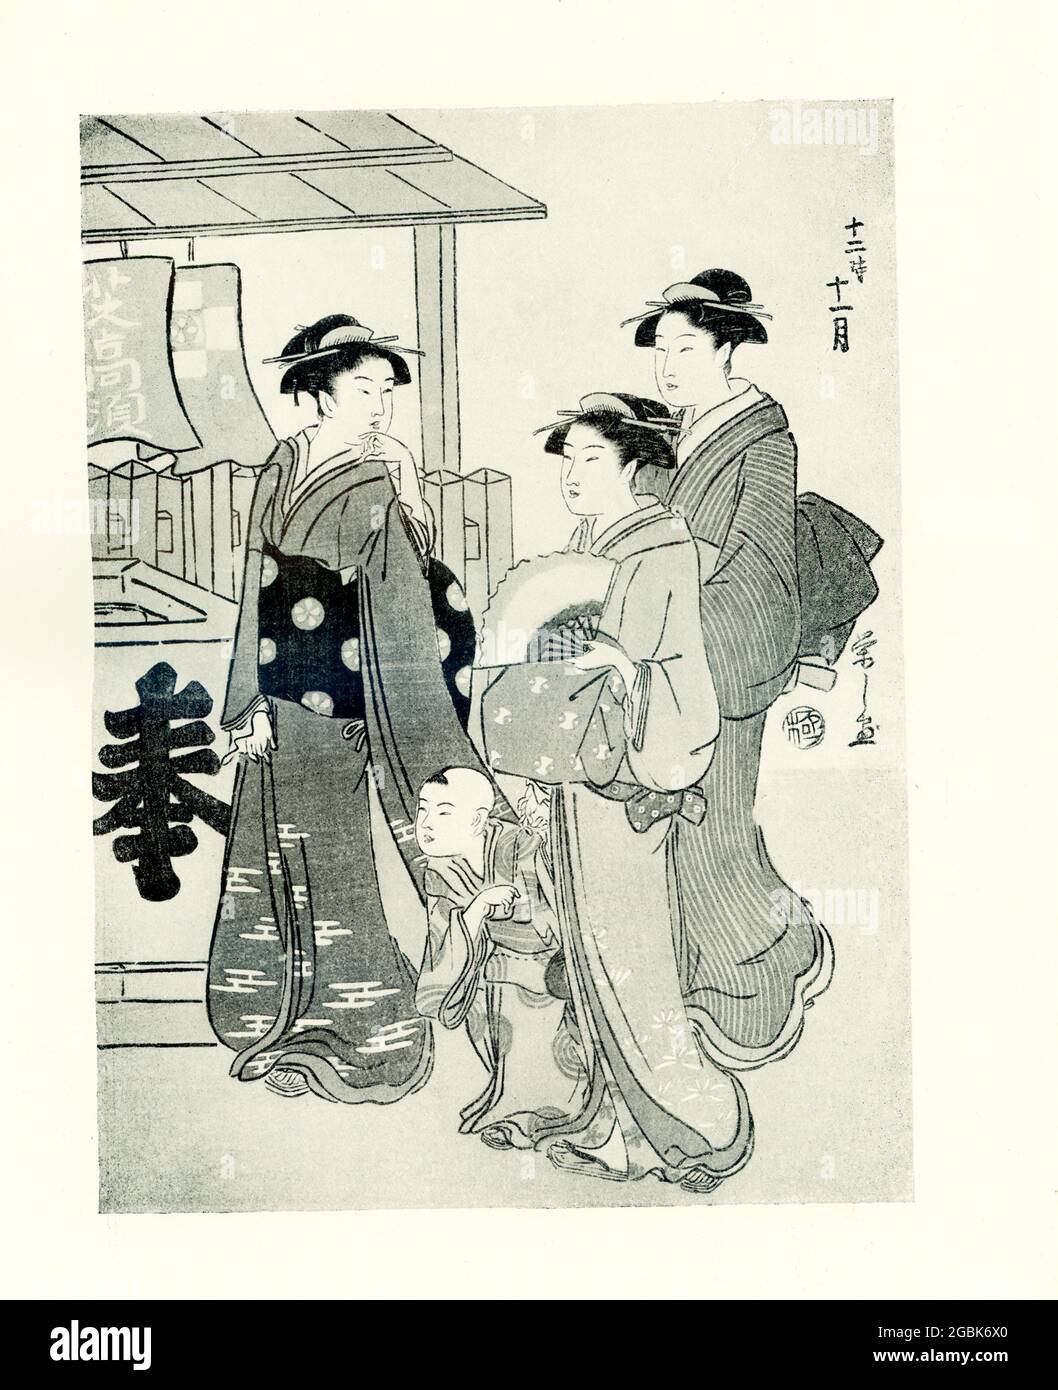 Dieses Bild aus dem Jahr 1920 zeigt eine Dame, gefolgt von ihrer Magd, die sich mit ihrem Diener auf eine Kurtisane umdreht. Es ist von Yeishi signiert und gehört zu einer Serie von zwölf Monaten. Dies geschah im elften Monat. Hosoi Yeishi war ein japanischer Künstler, der von 1756 bis 1829 lebte. Stockfoto